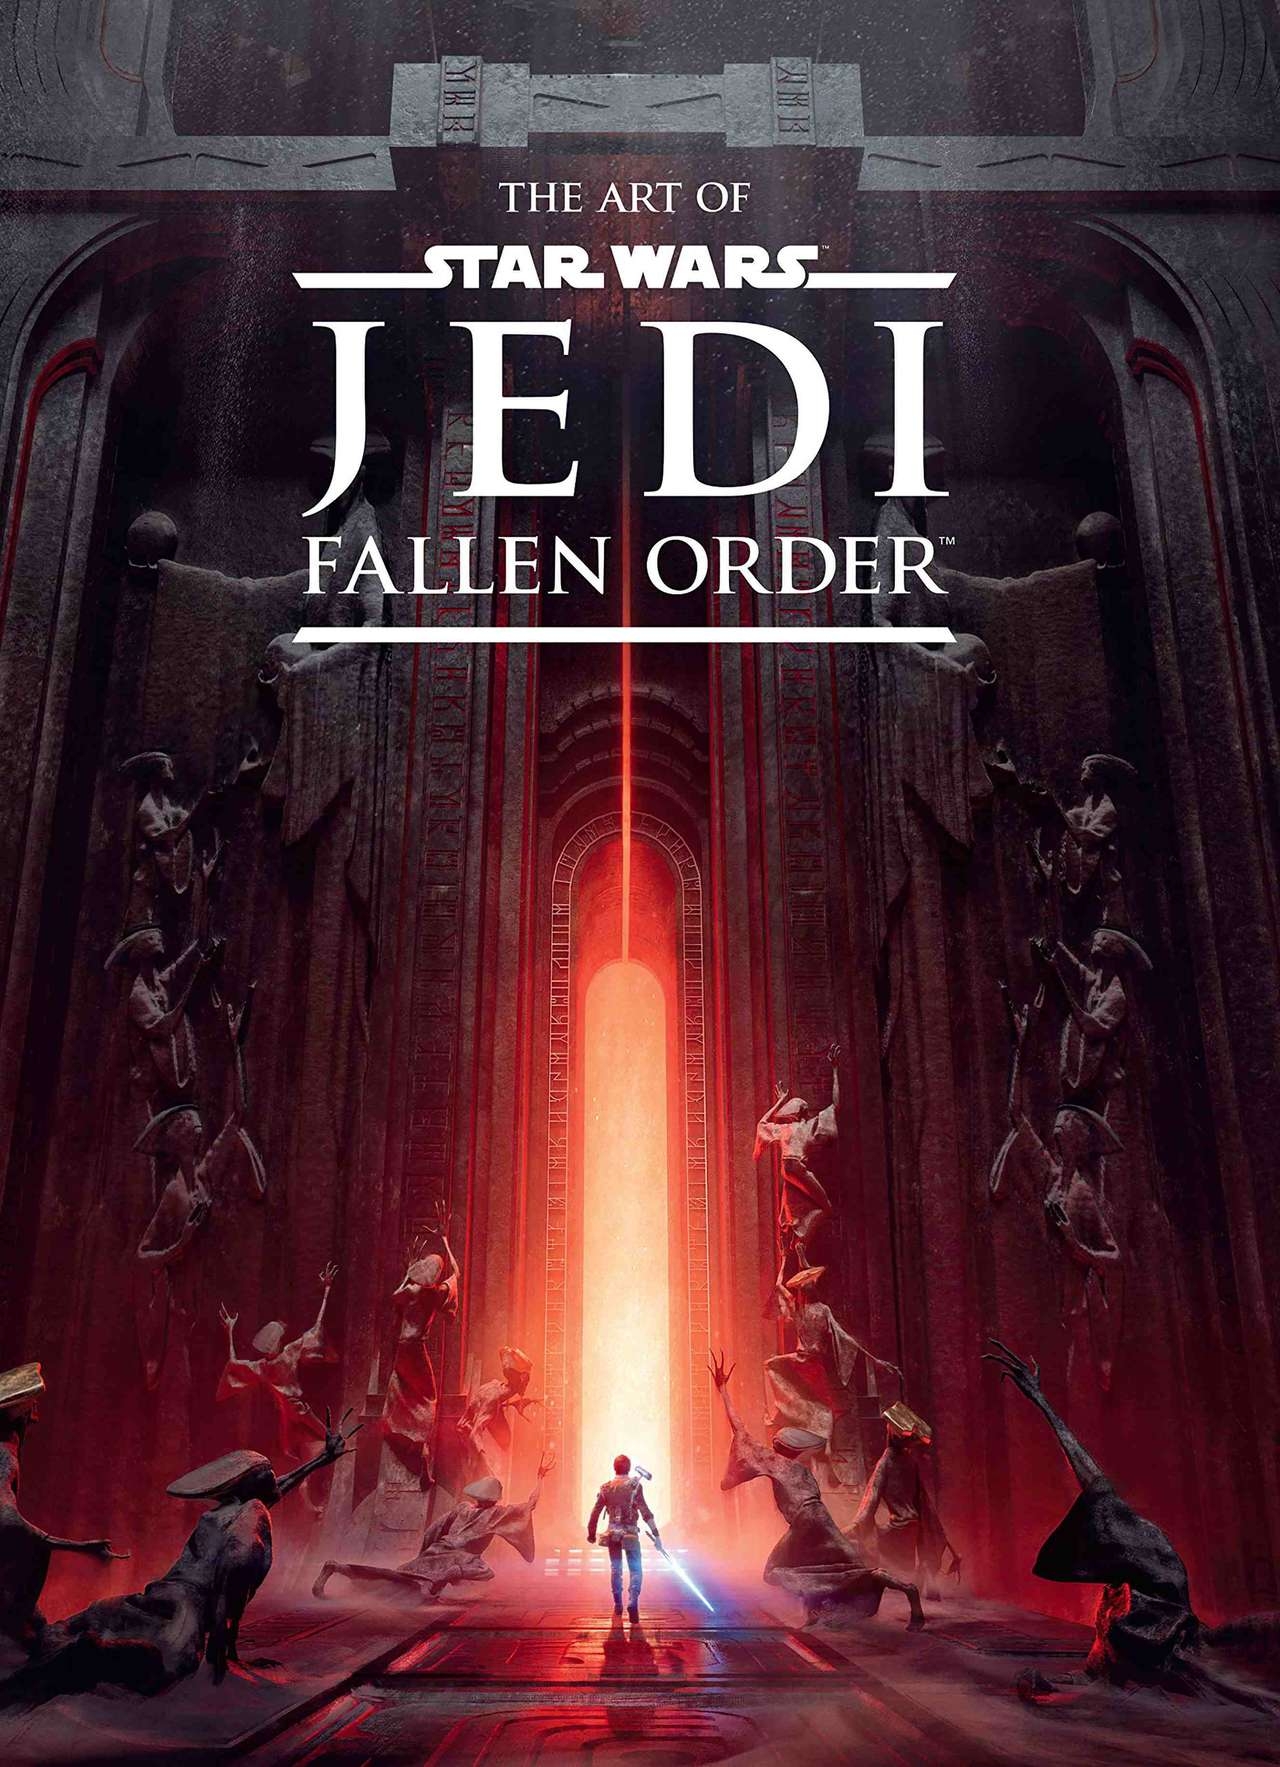 The Art of Star Wars Jedi - Fallen Order 259